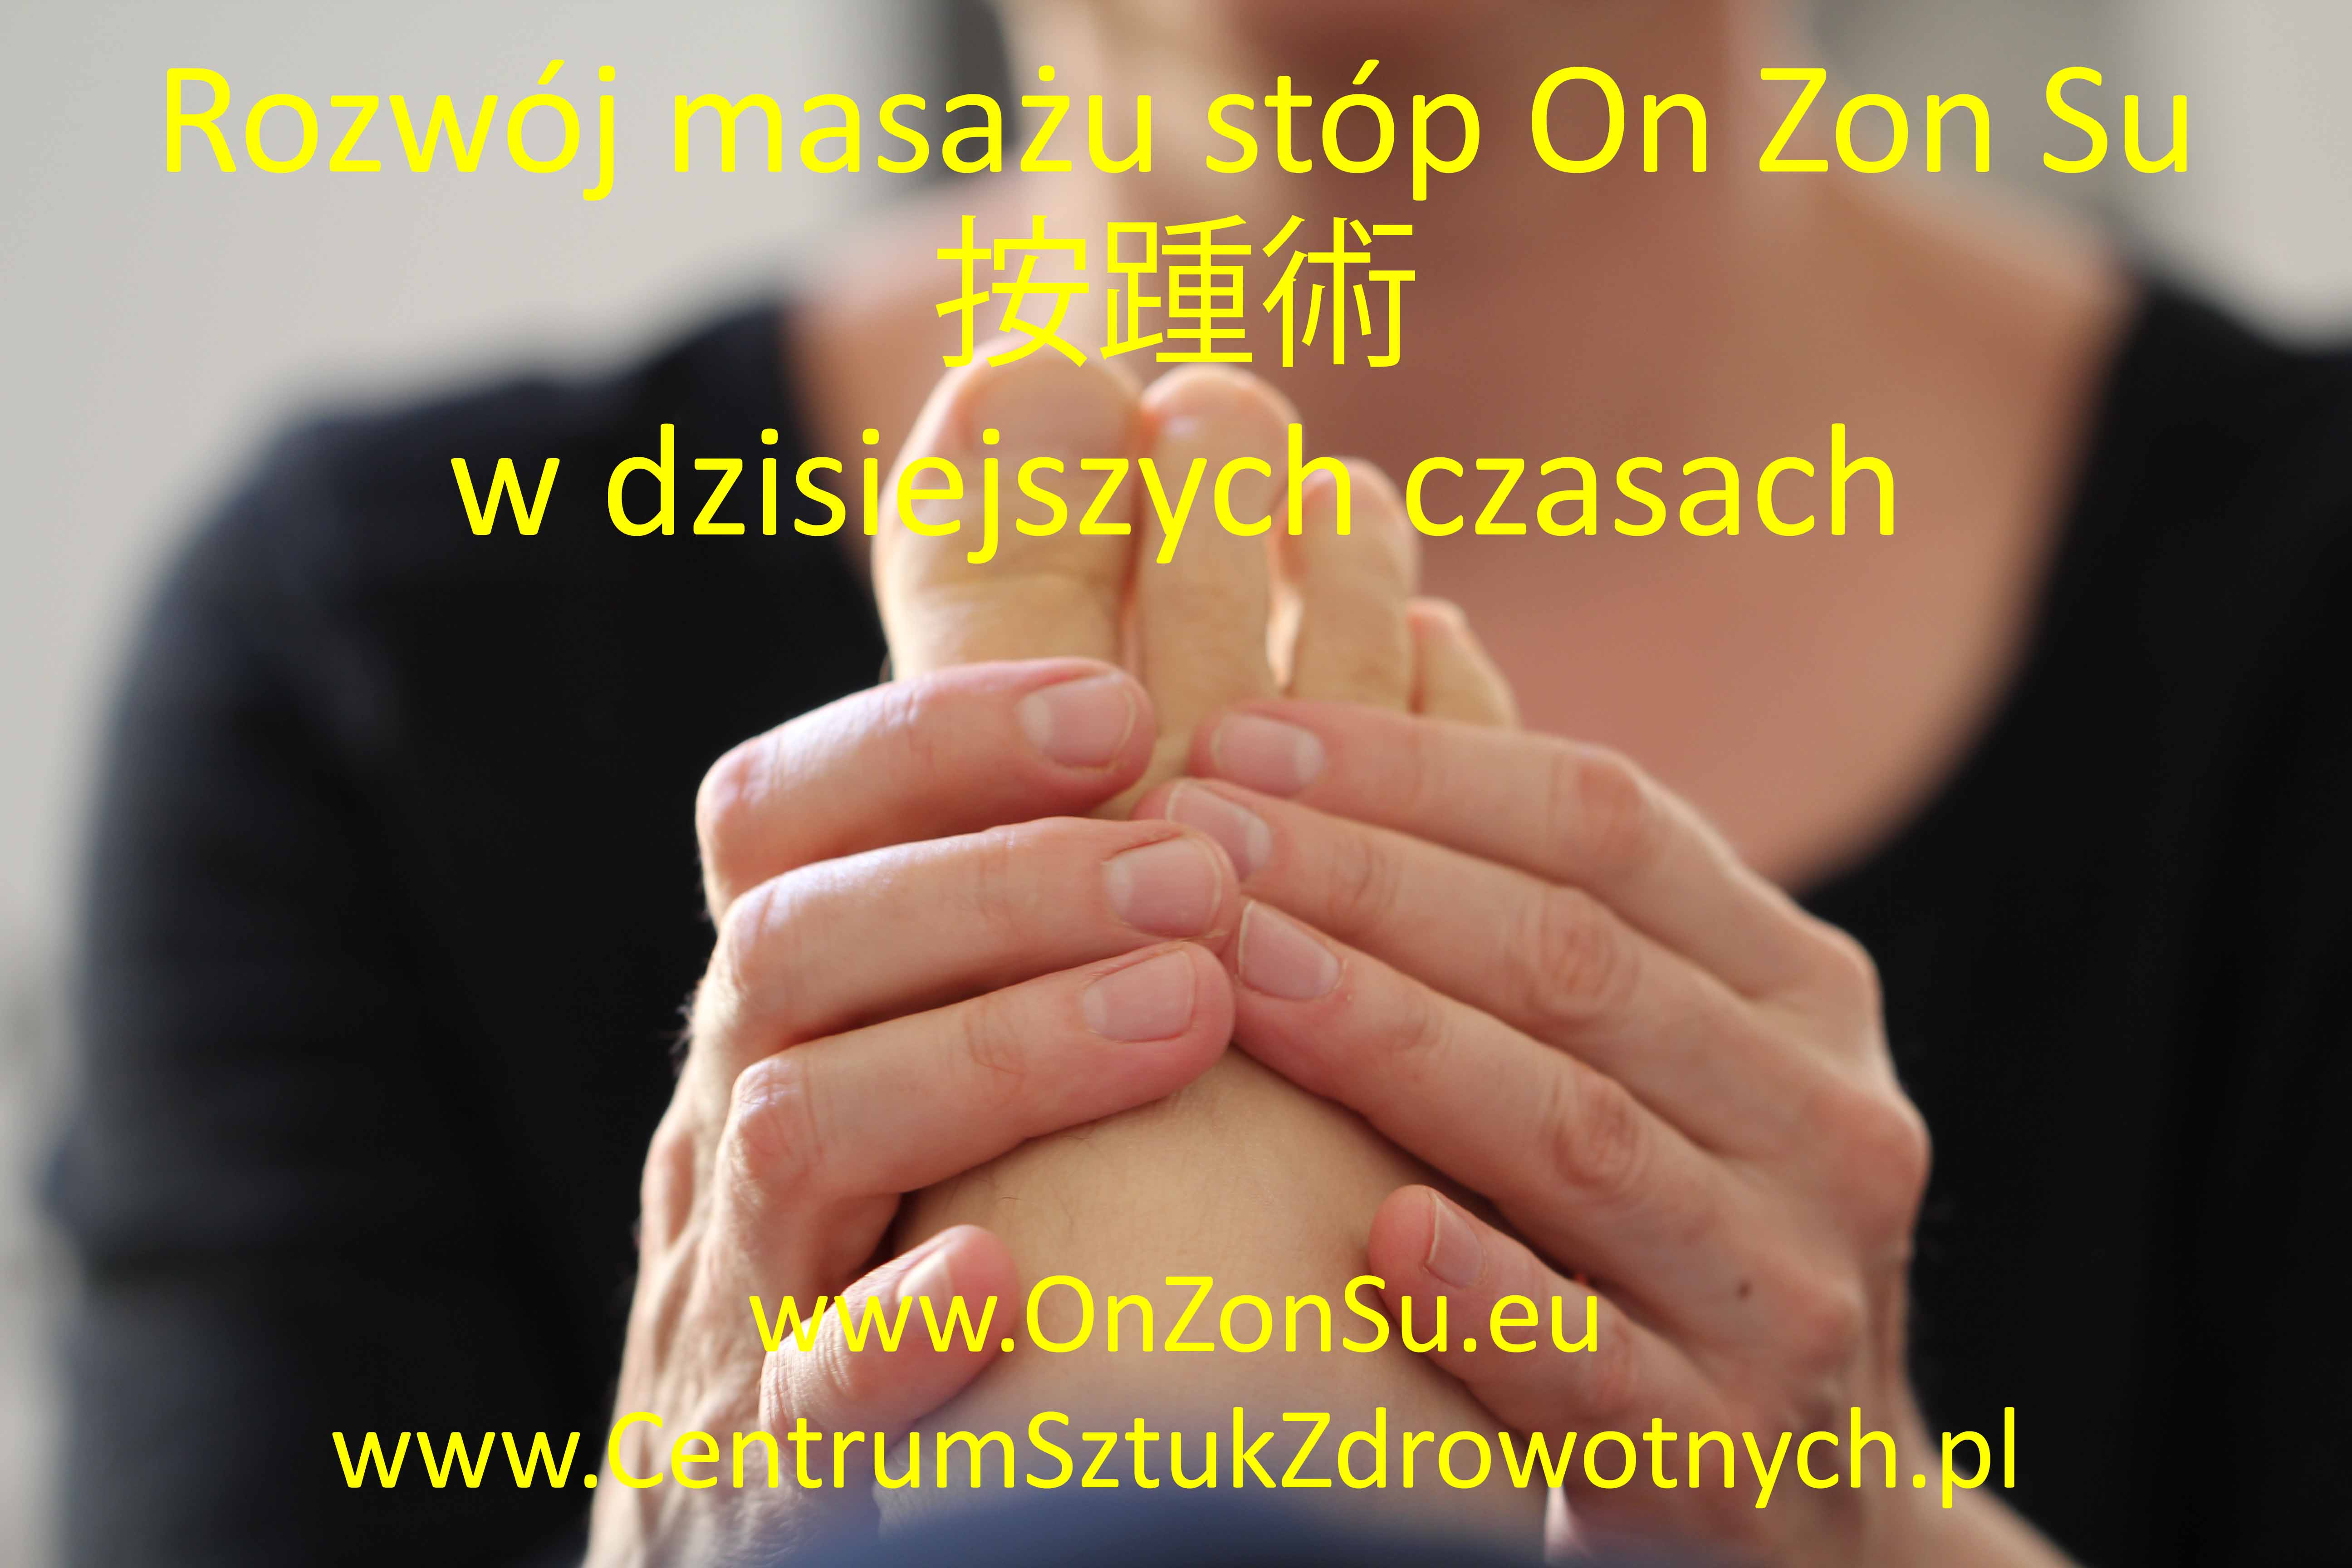 Kurs masażu stóp On Zon Su, Szkolenia refleksologii stóp - Rozwój masażu On Zon Su w dzisiejszych czasach IMG_1364_MEM.jpg